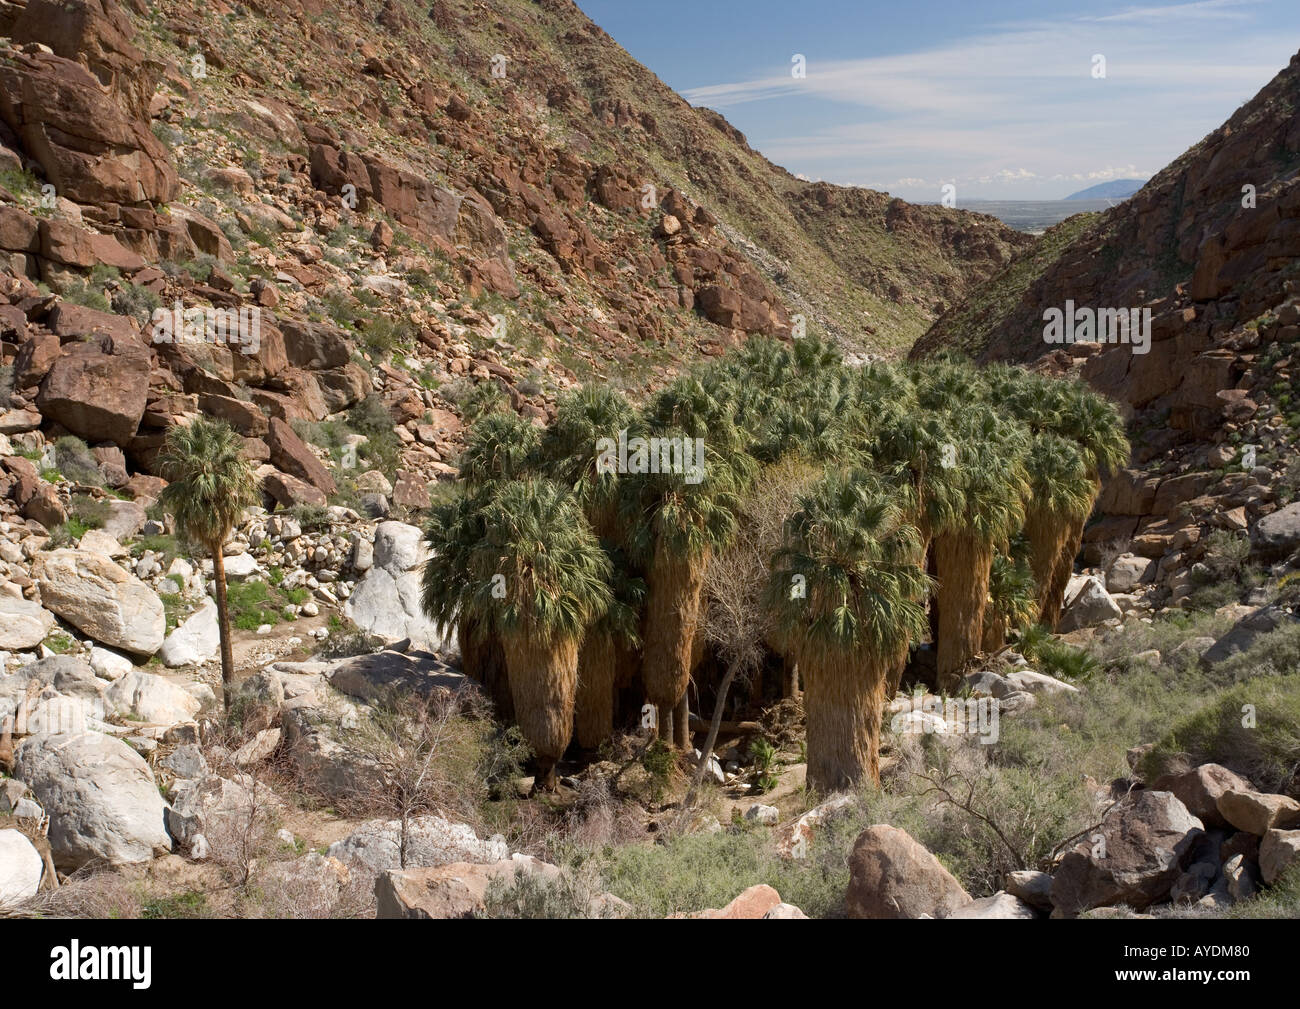 Palmier californien (Washingtonia filifera) grove à Palm Springs canyon, Californie, États-Unis Banque D'Images